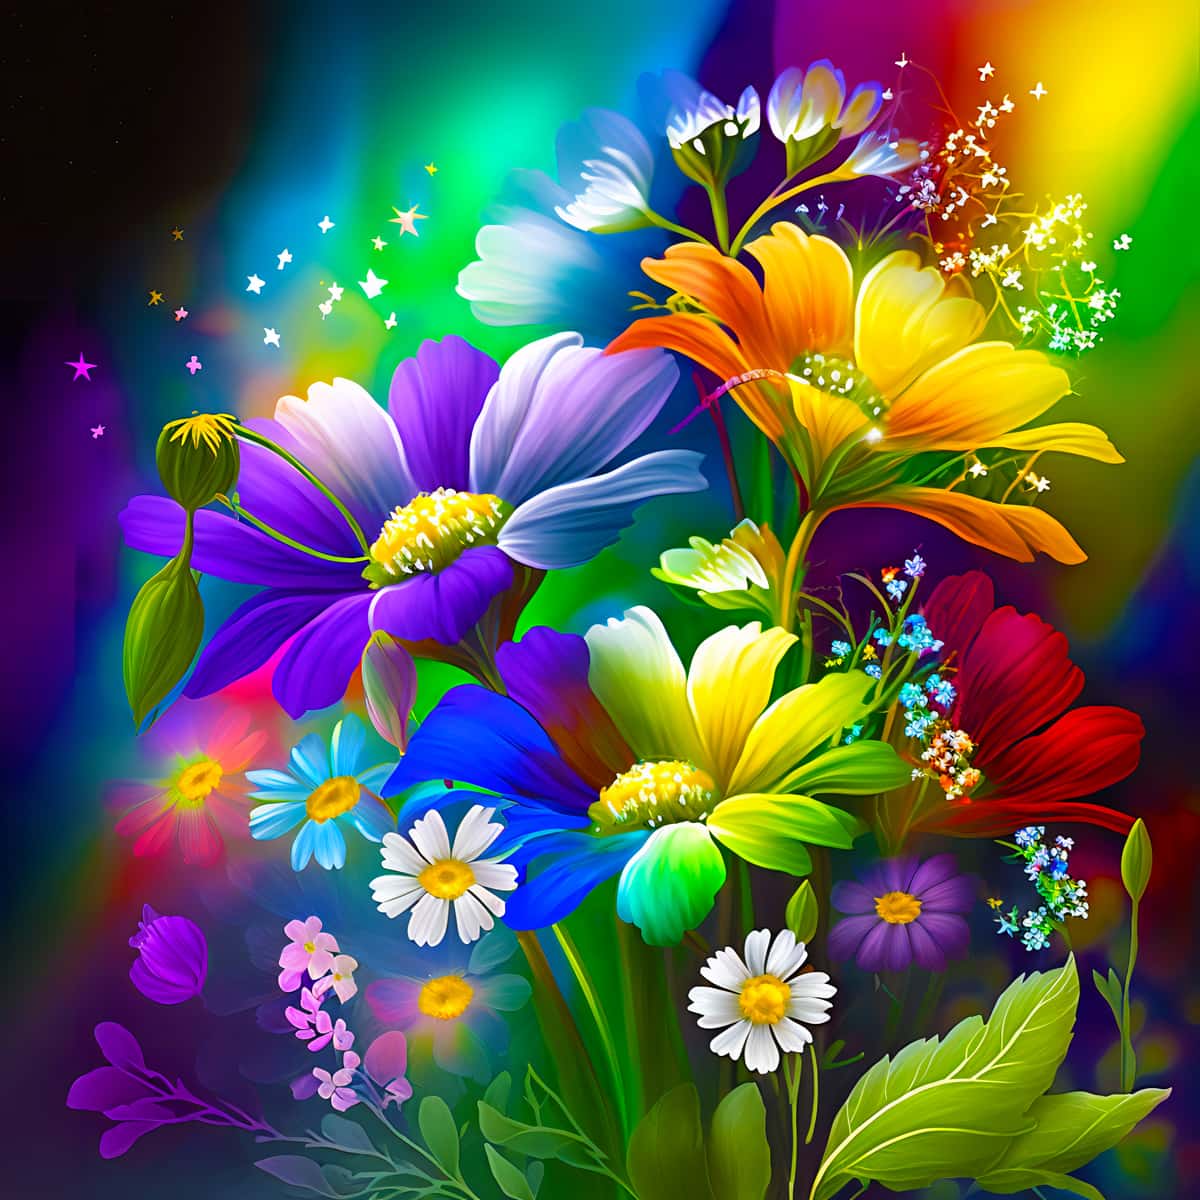 Diamond Painting - Regenbogenblumen - gedruckt in Ultra-HD - Blumen, Neu eingetroffen, Quadratisch